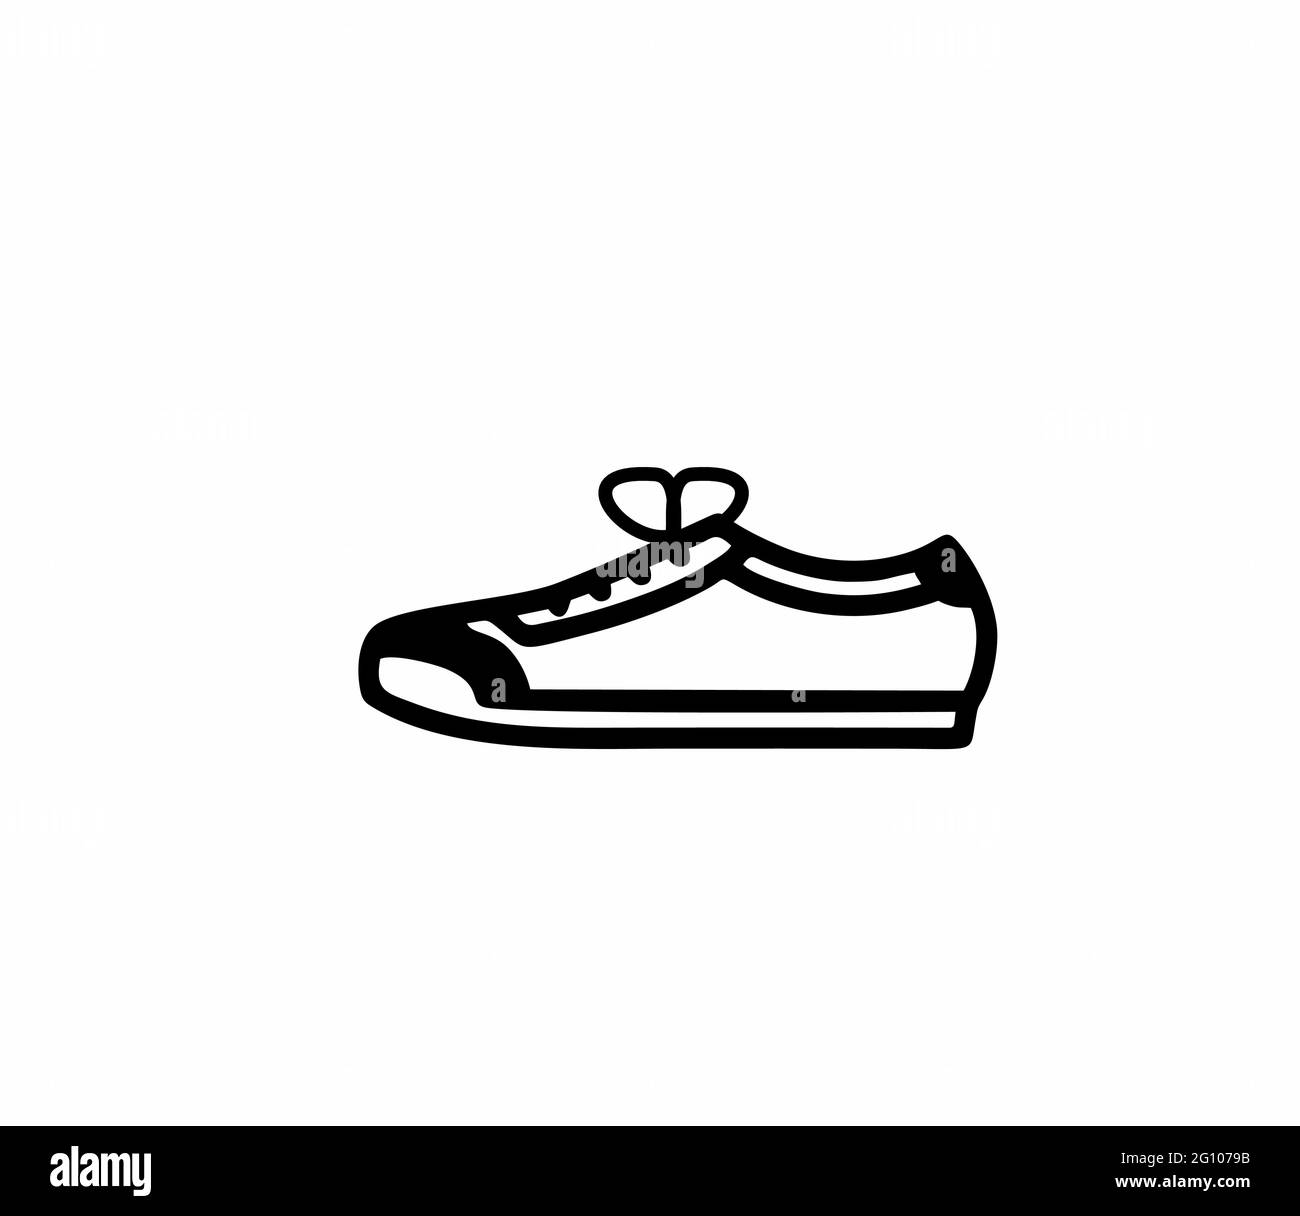 Una sneaker o una scarpa sportiva in bianco e nero come vettore isolato, per segno, logo, app o sito web Illustrazione Vettoriale